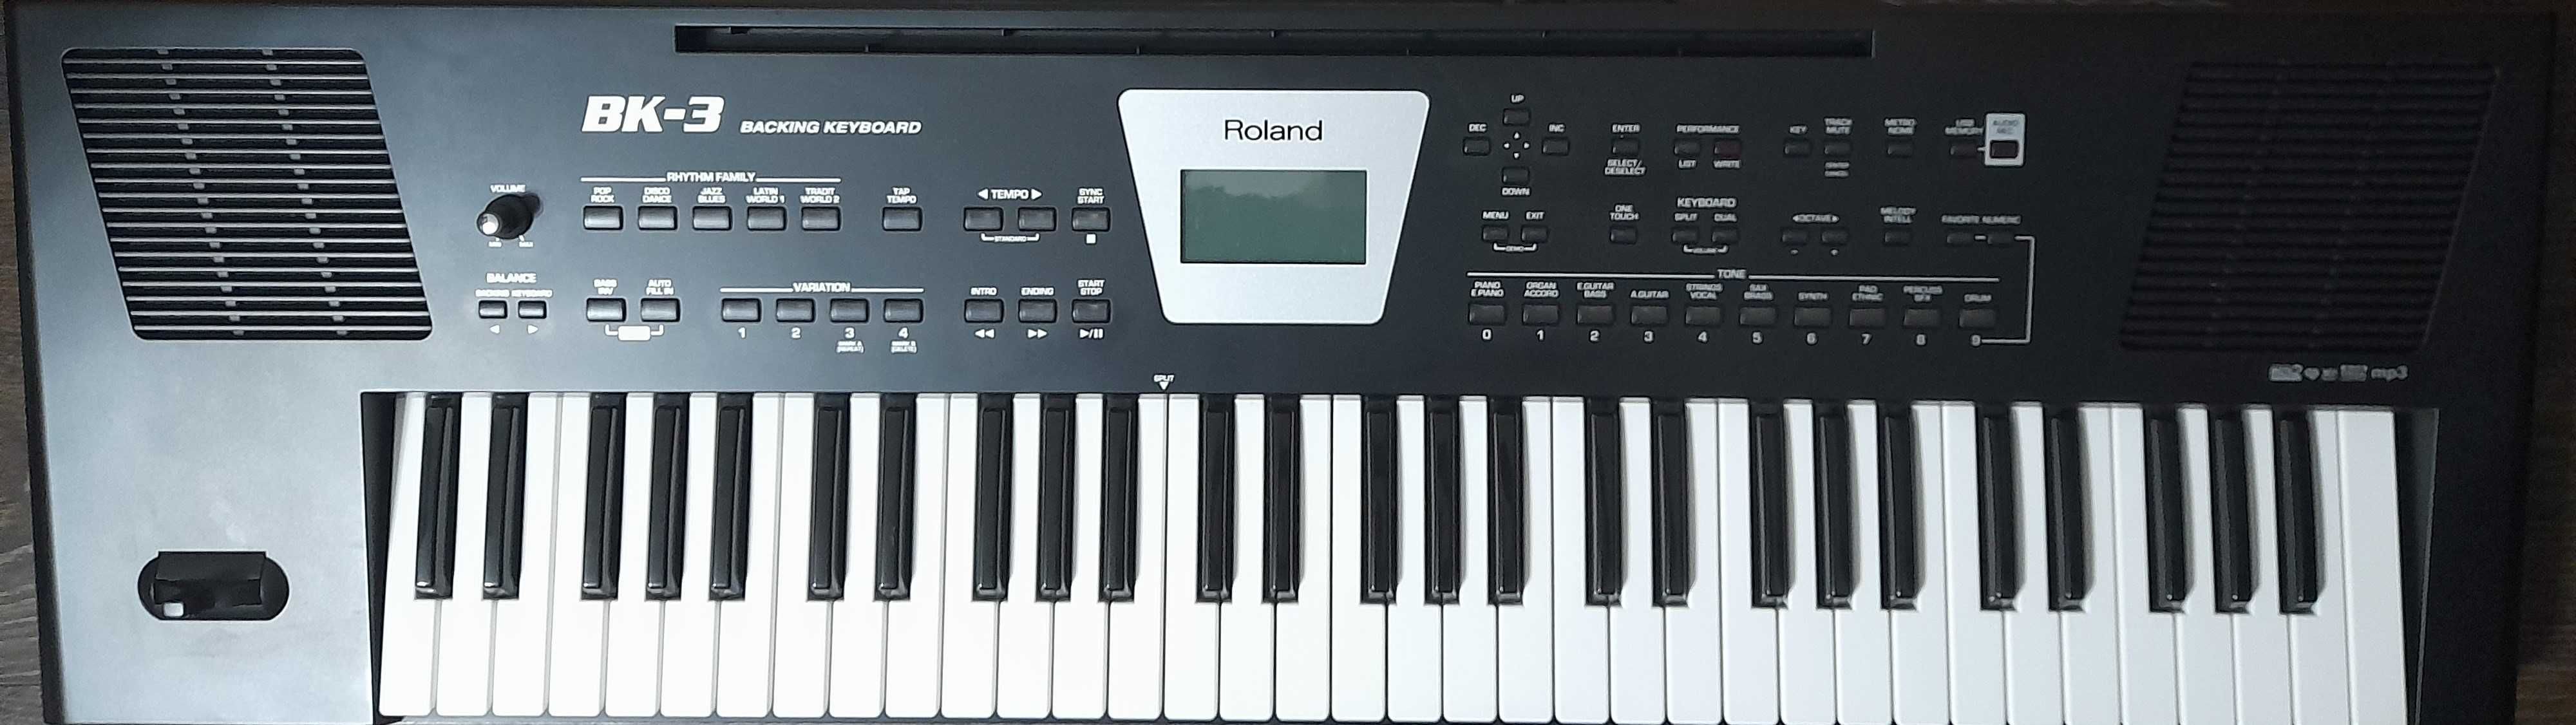 sprzedam keyboard Roland BK-3